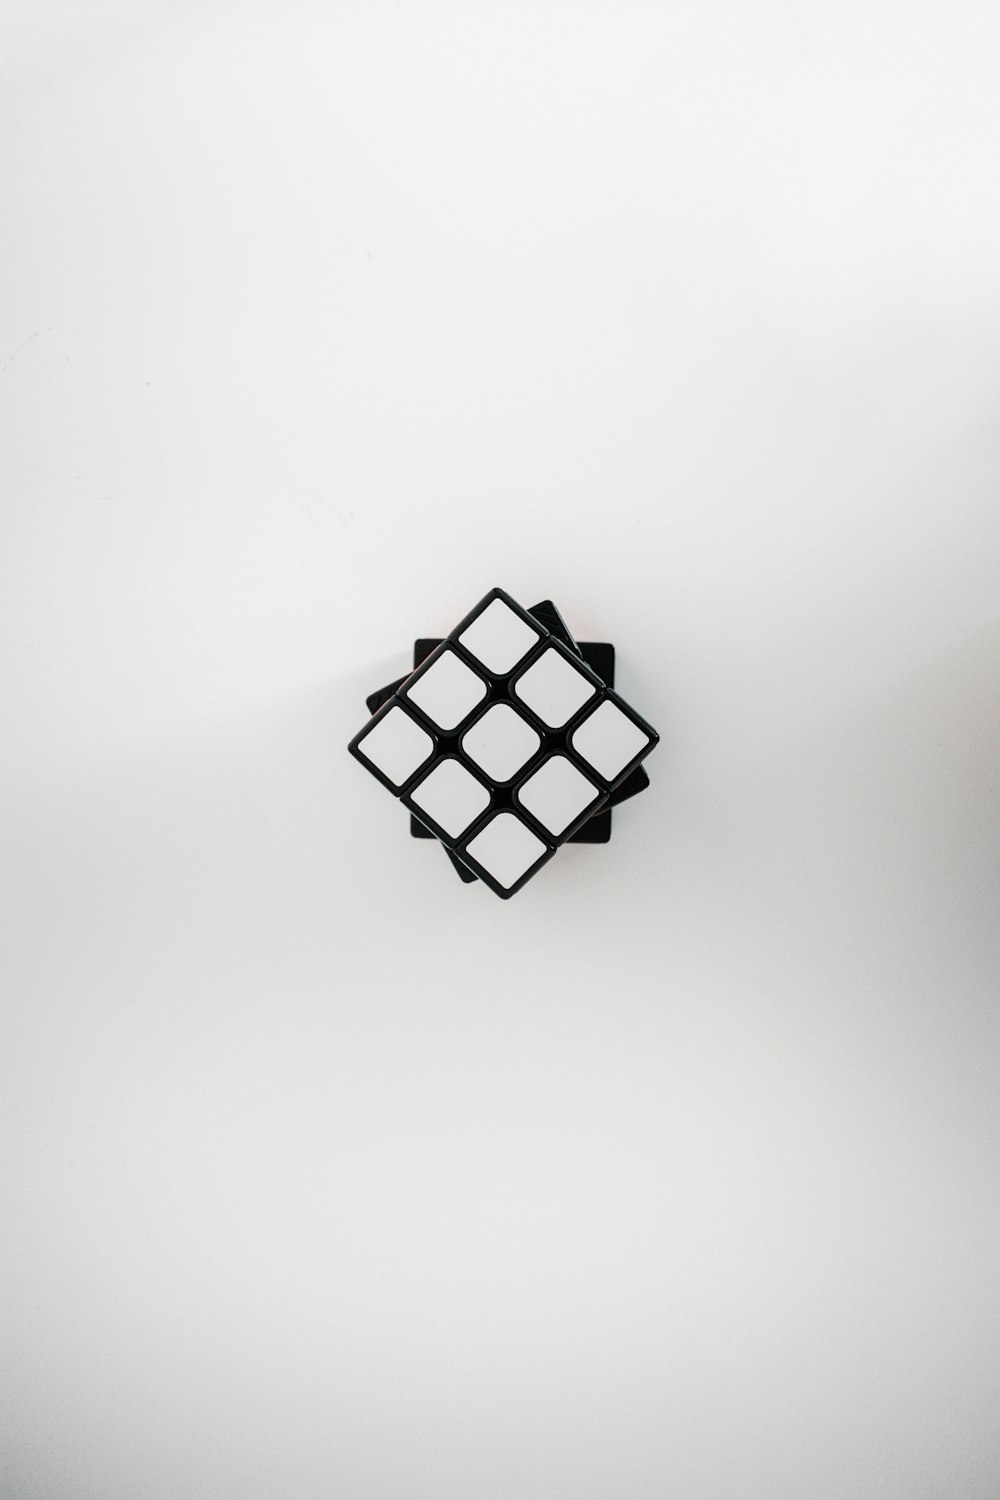 weiß-schwarz kariertes Quadrat